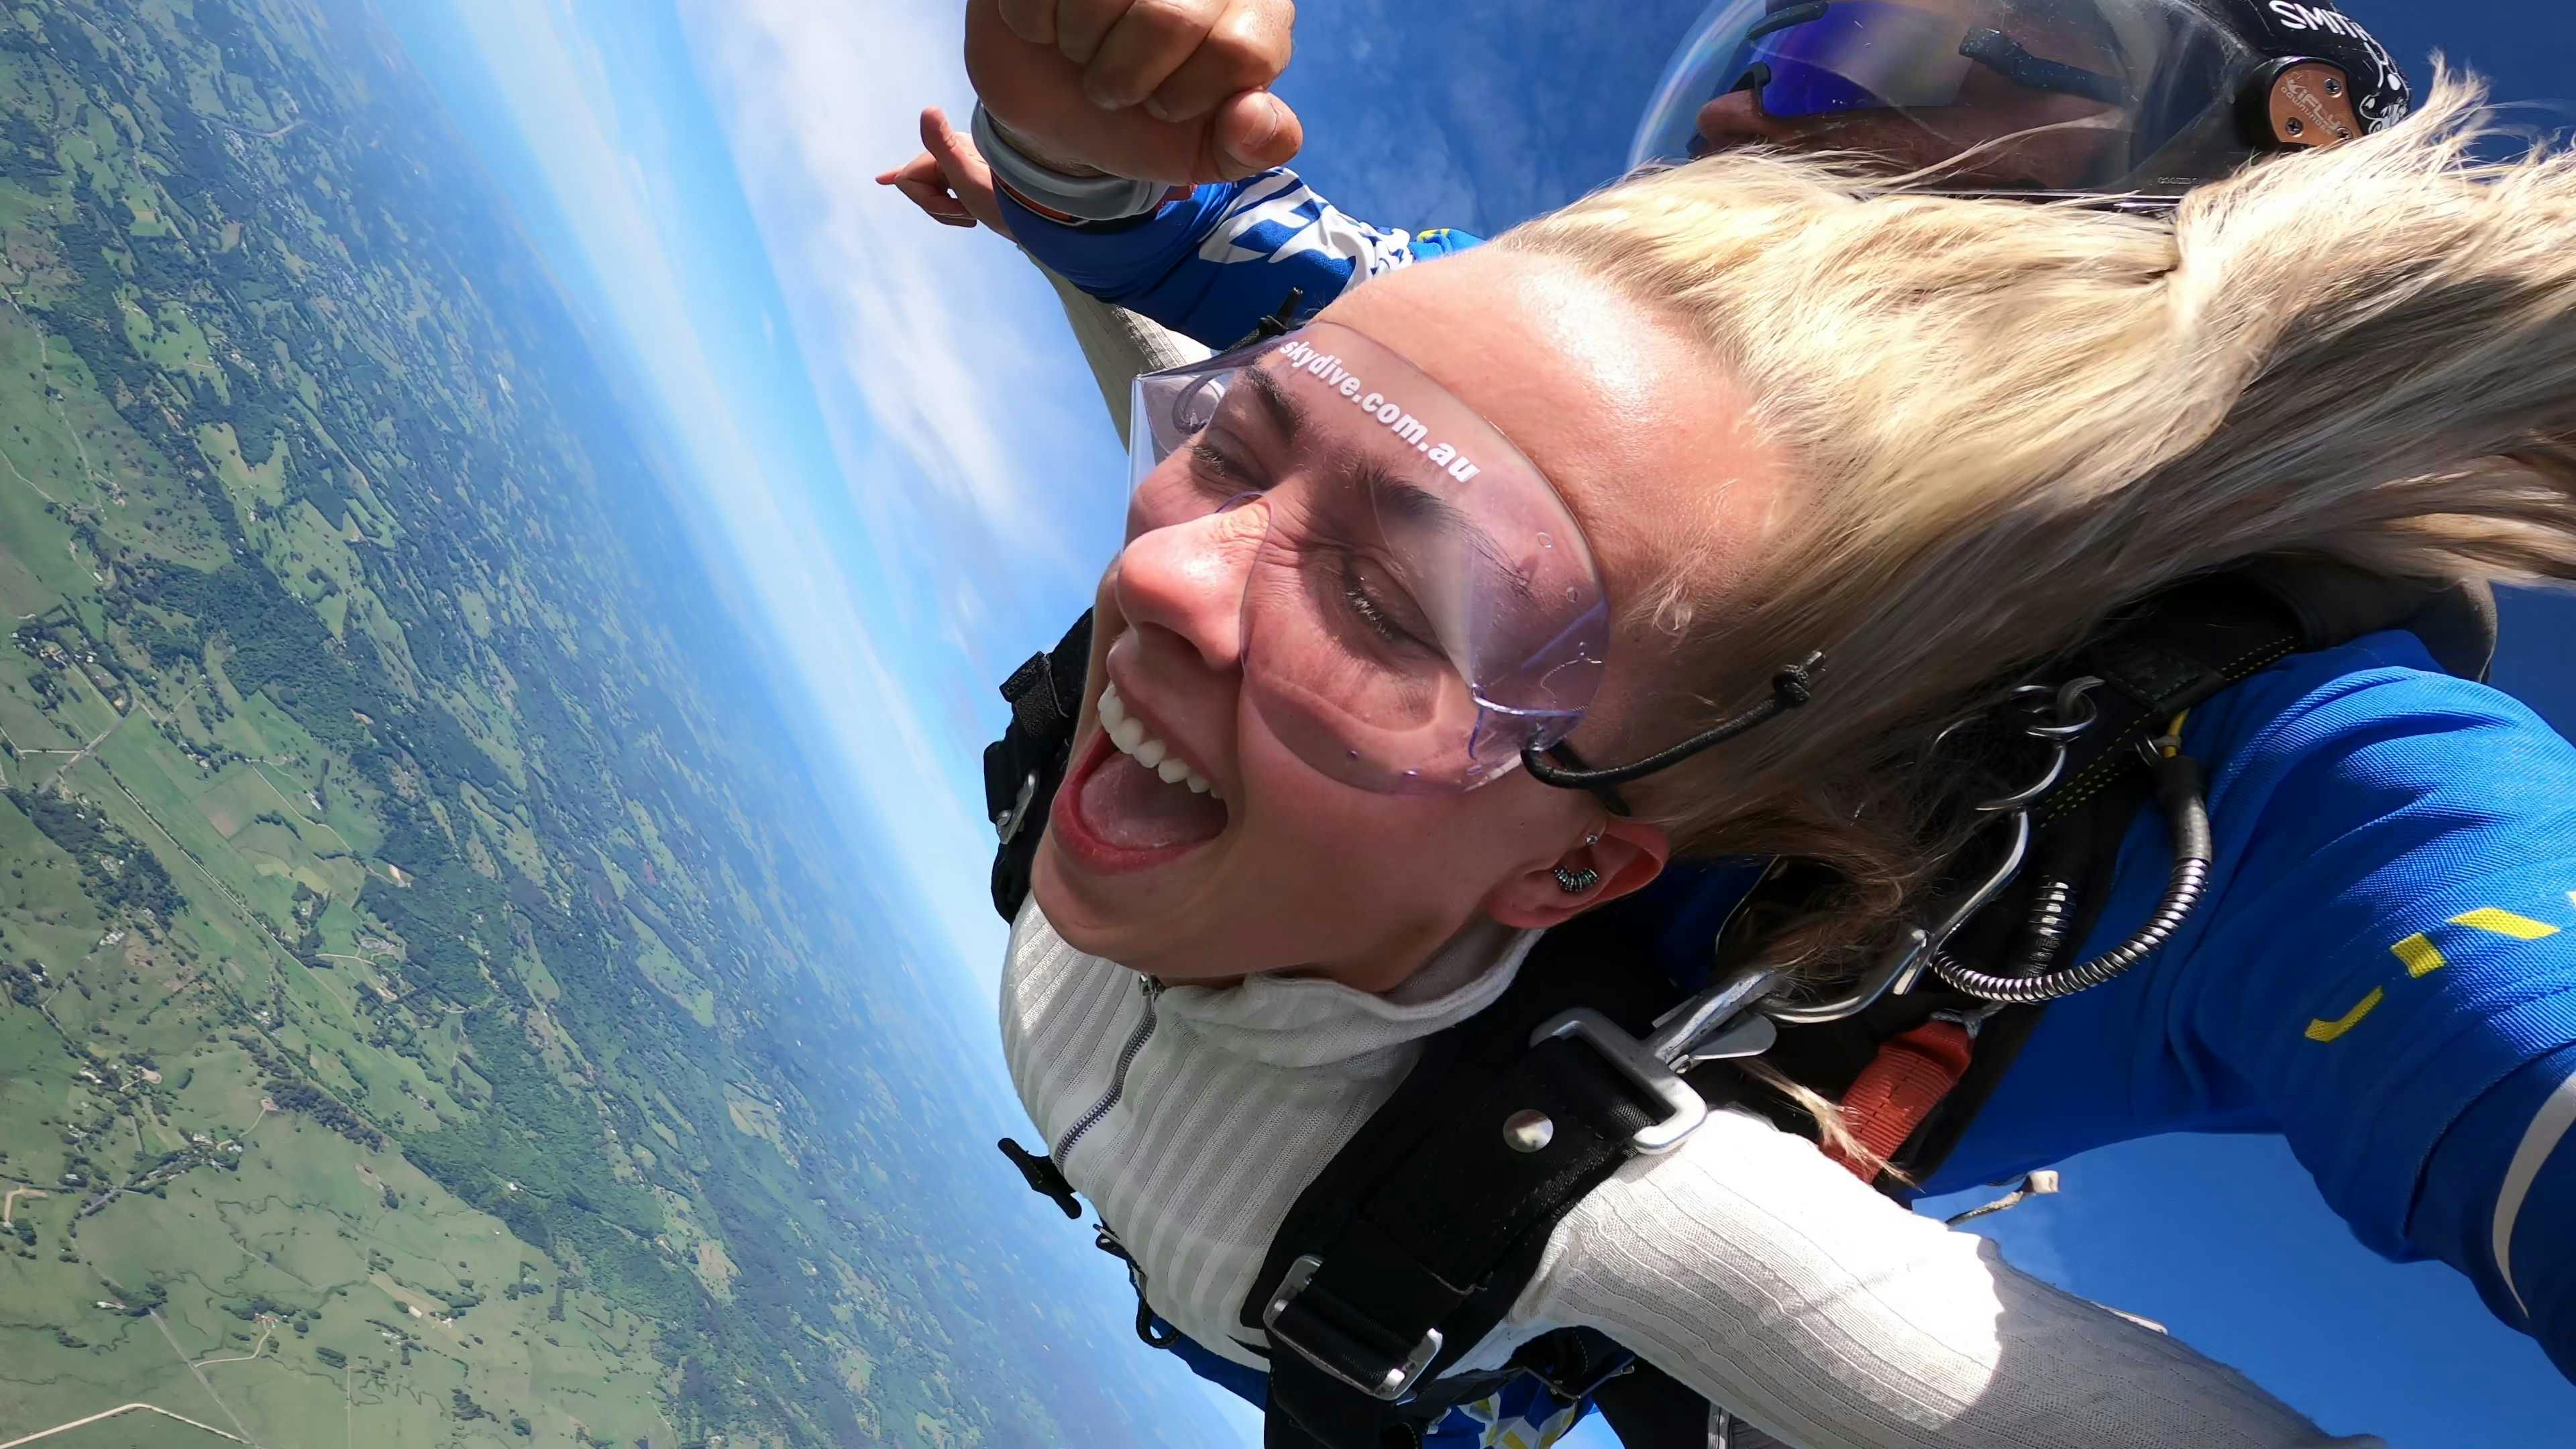 Caroline Westvang Andreassen skydiving